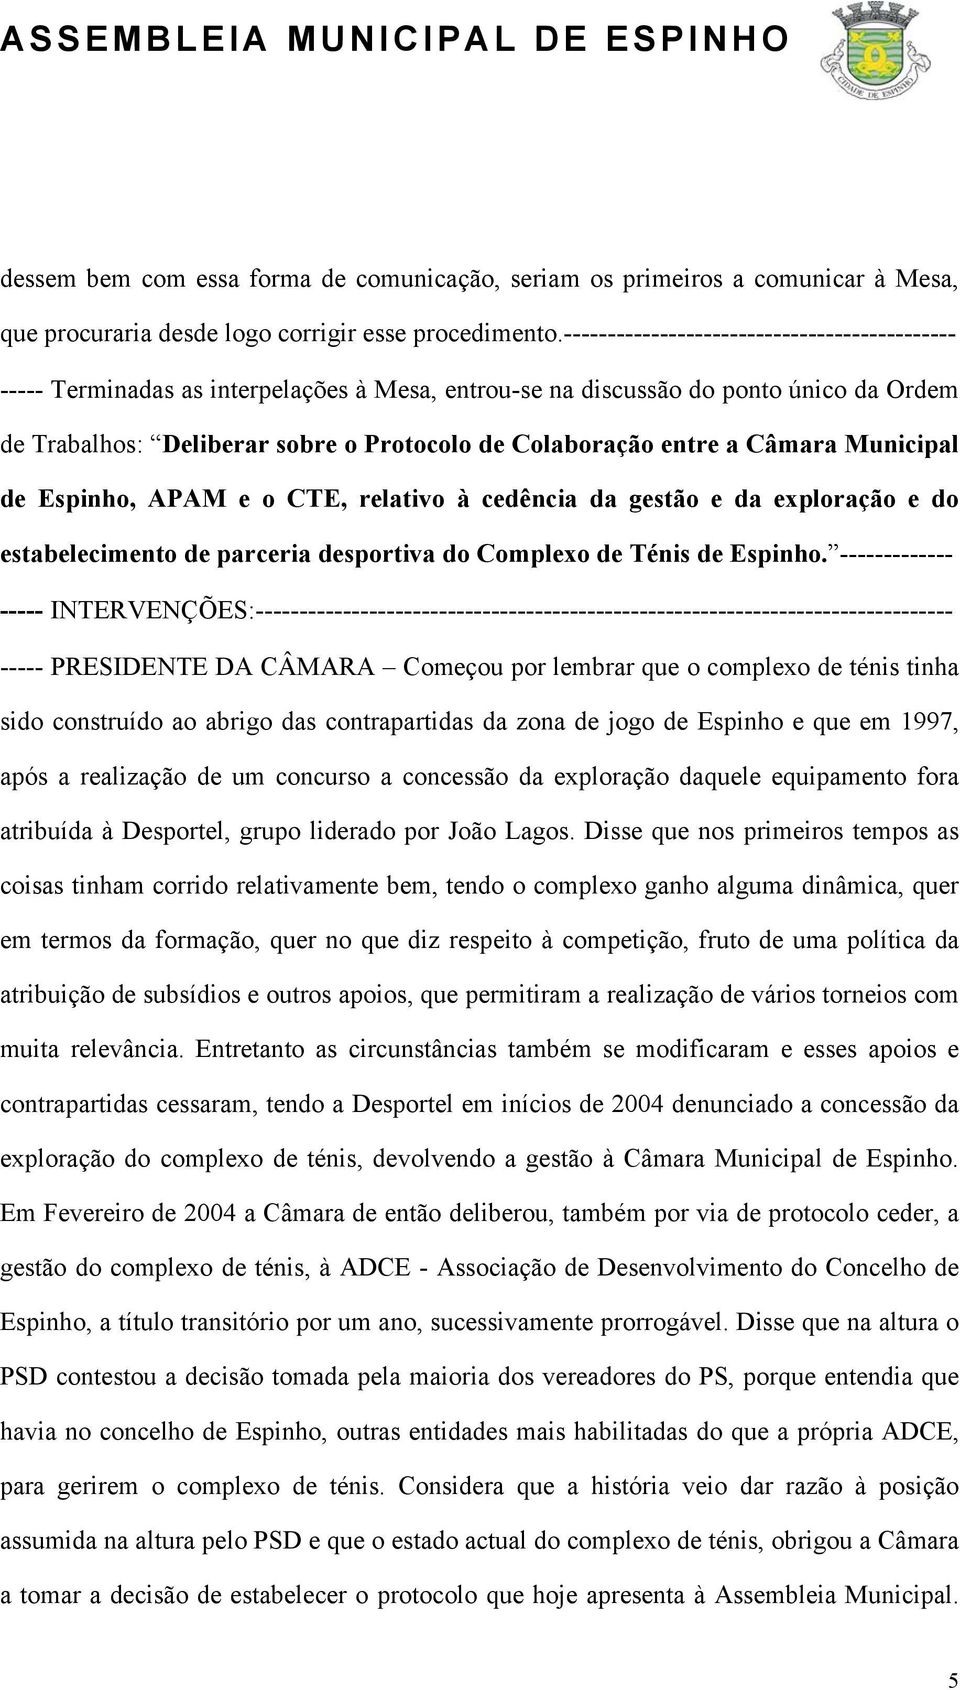 Câmara Municipal de Espinho, APAM e o CTE, relativo à cedência da gestão e da exploração e do estabelecimento de parceria desportiva do Complexo de Ténis de Espinho.